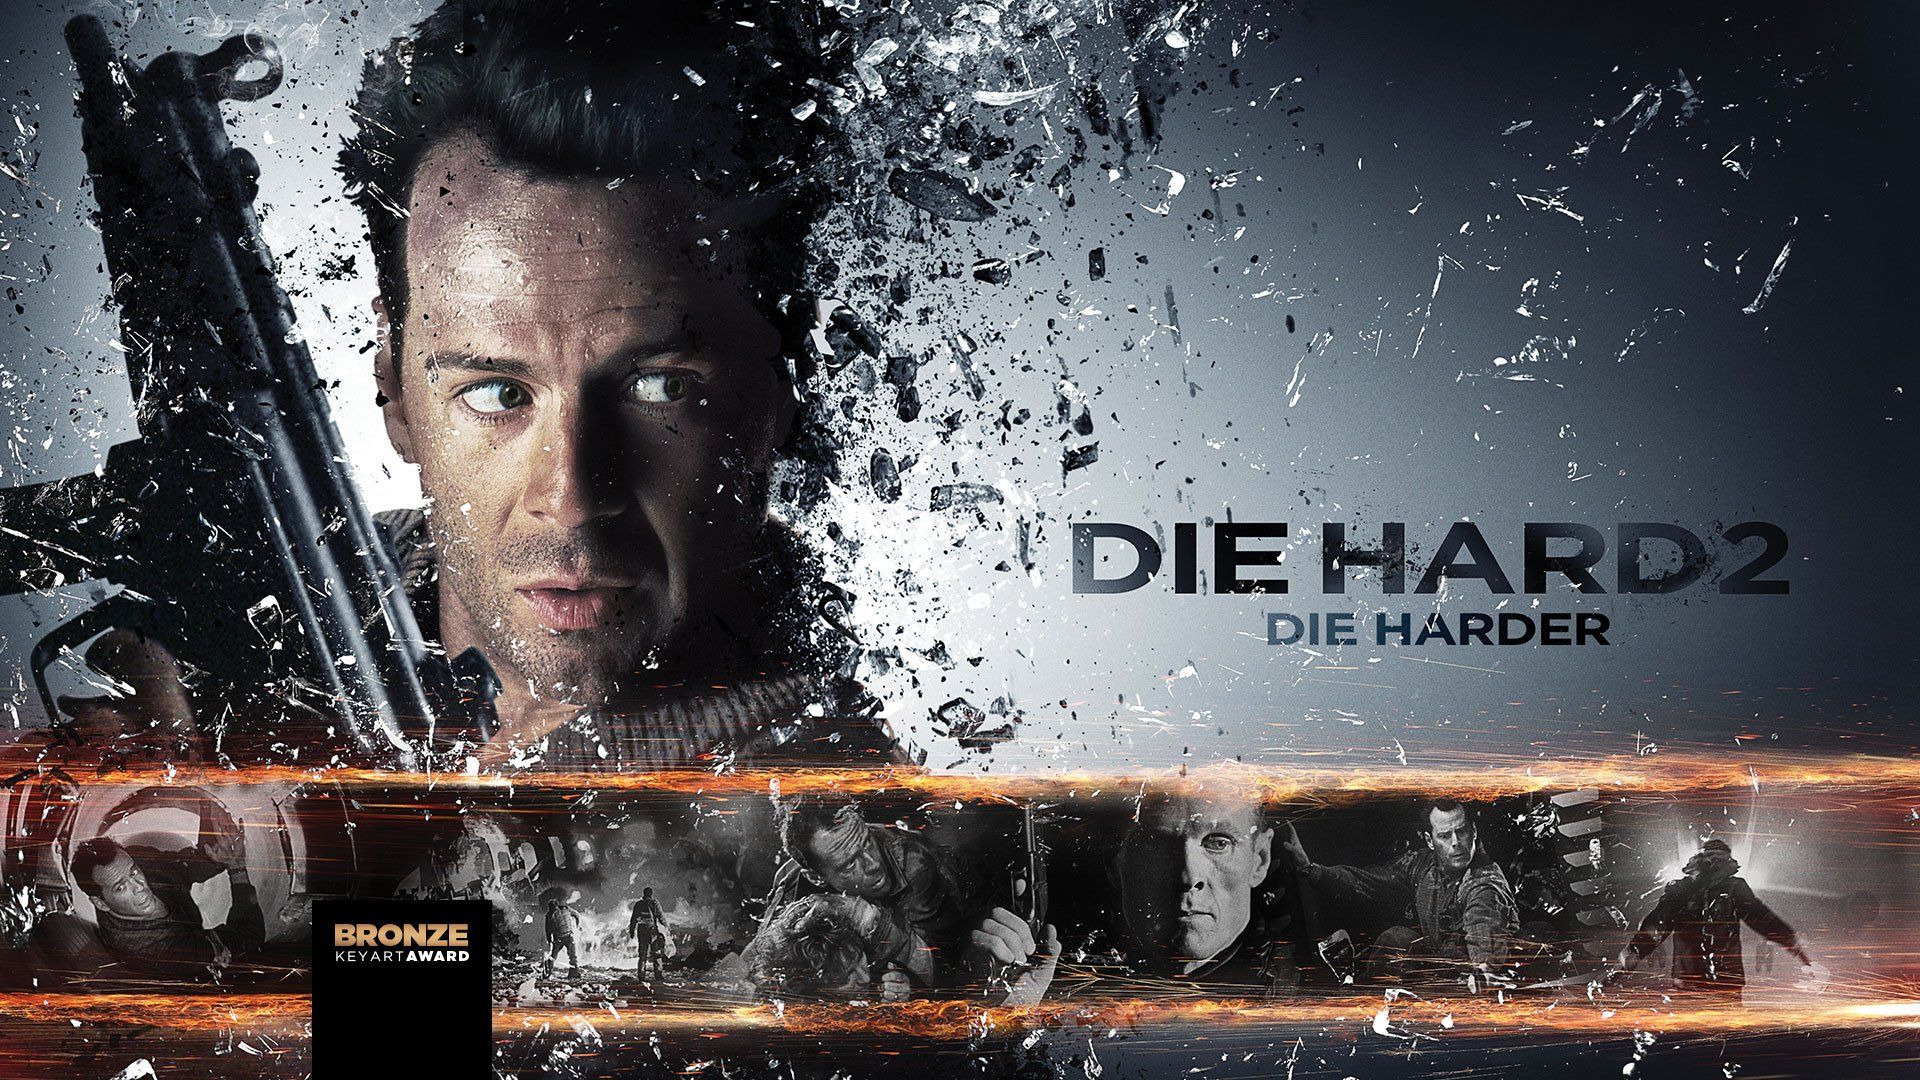 Die Hard 2 wallpaper, Movie, HQ Die Hard 2 pictureK Wallpaper 2019